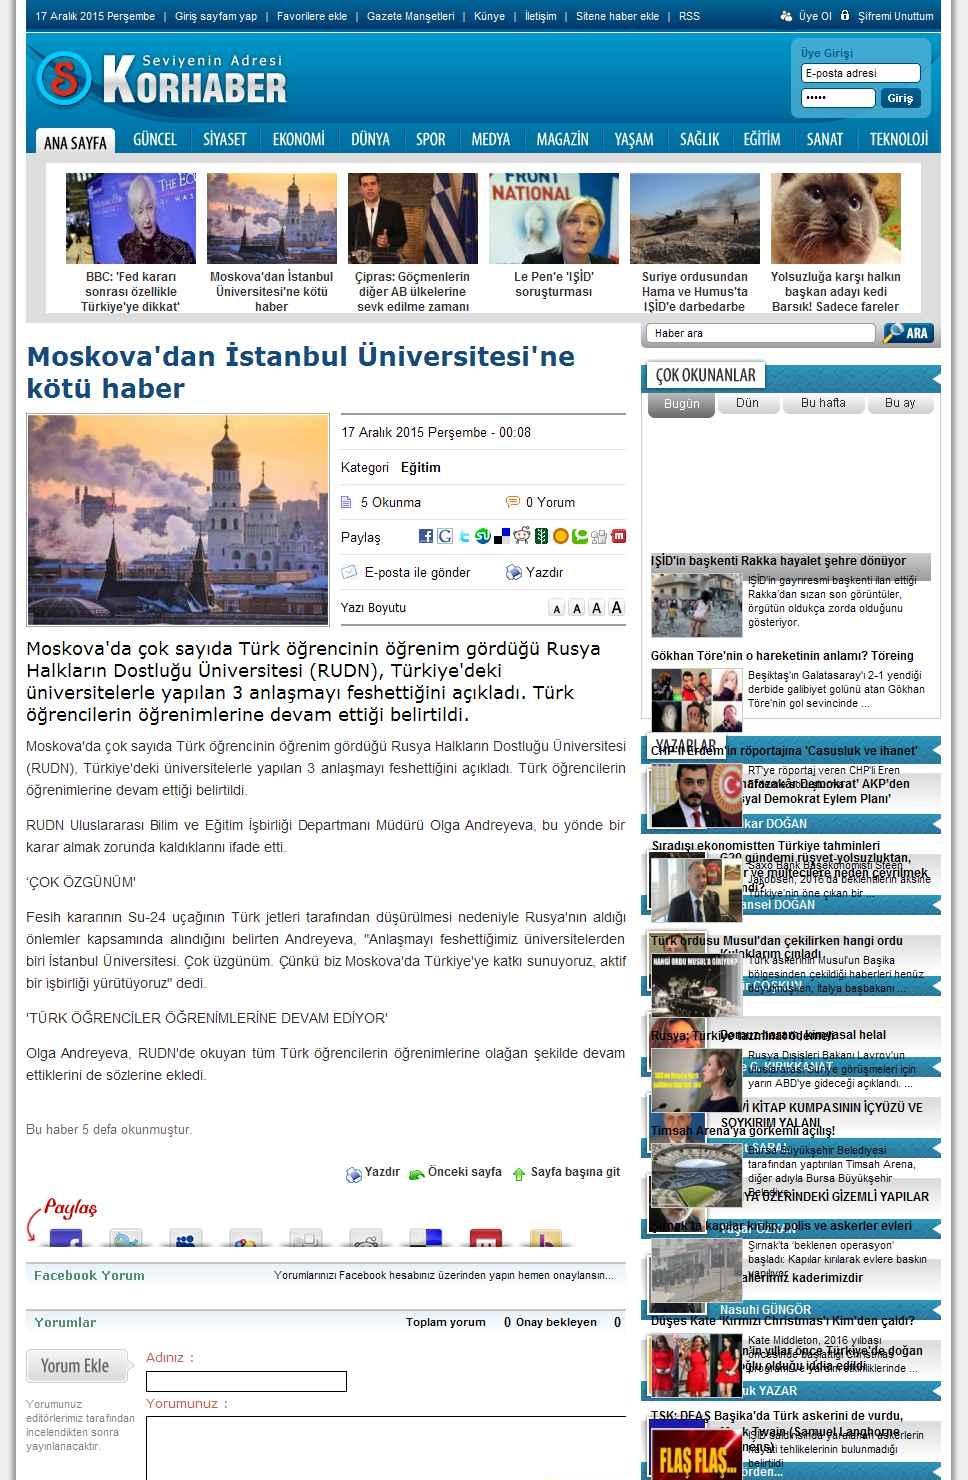 Portal Adres MOSKOVA'DAN ISTANBUL ÜNIVERSITESI'NE KÖTÜ HABER : www.korhaber.